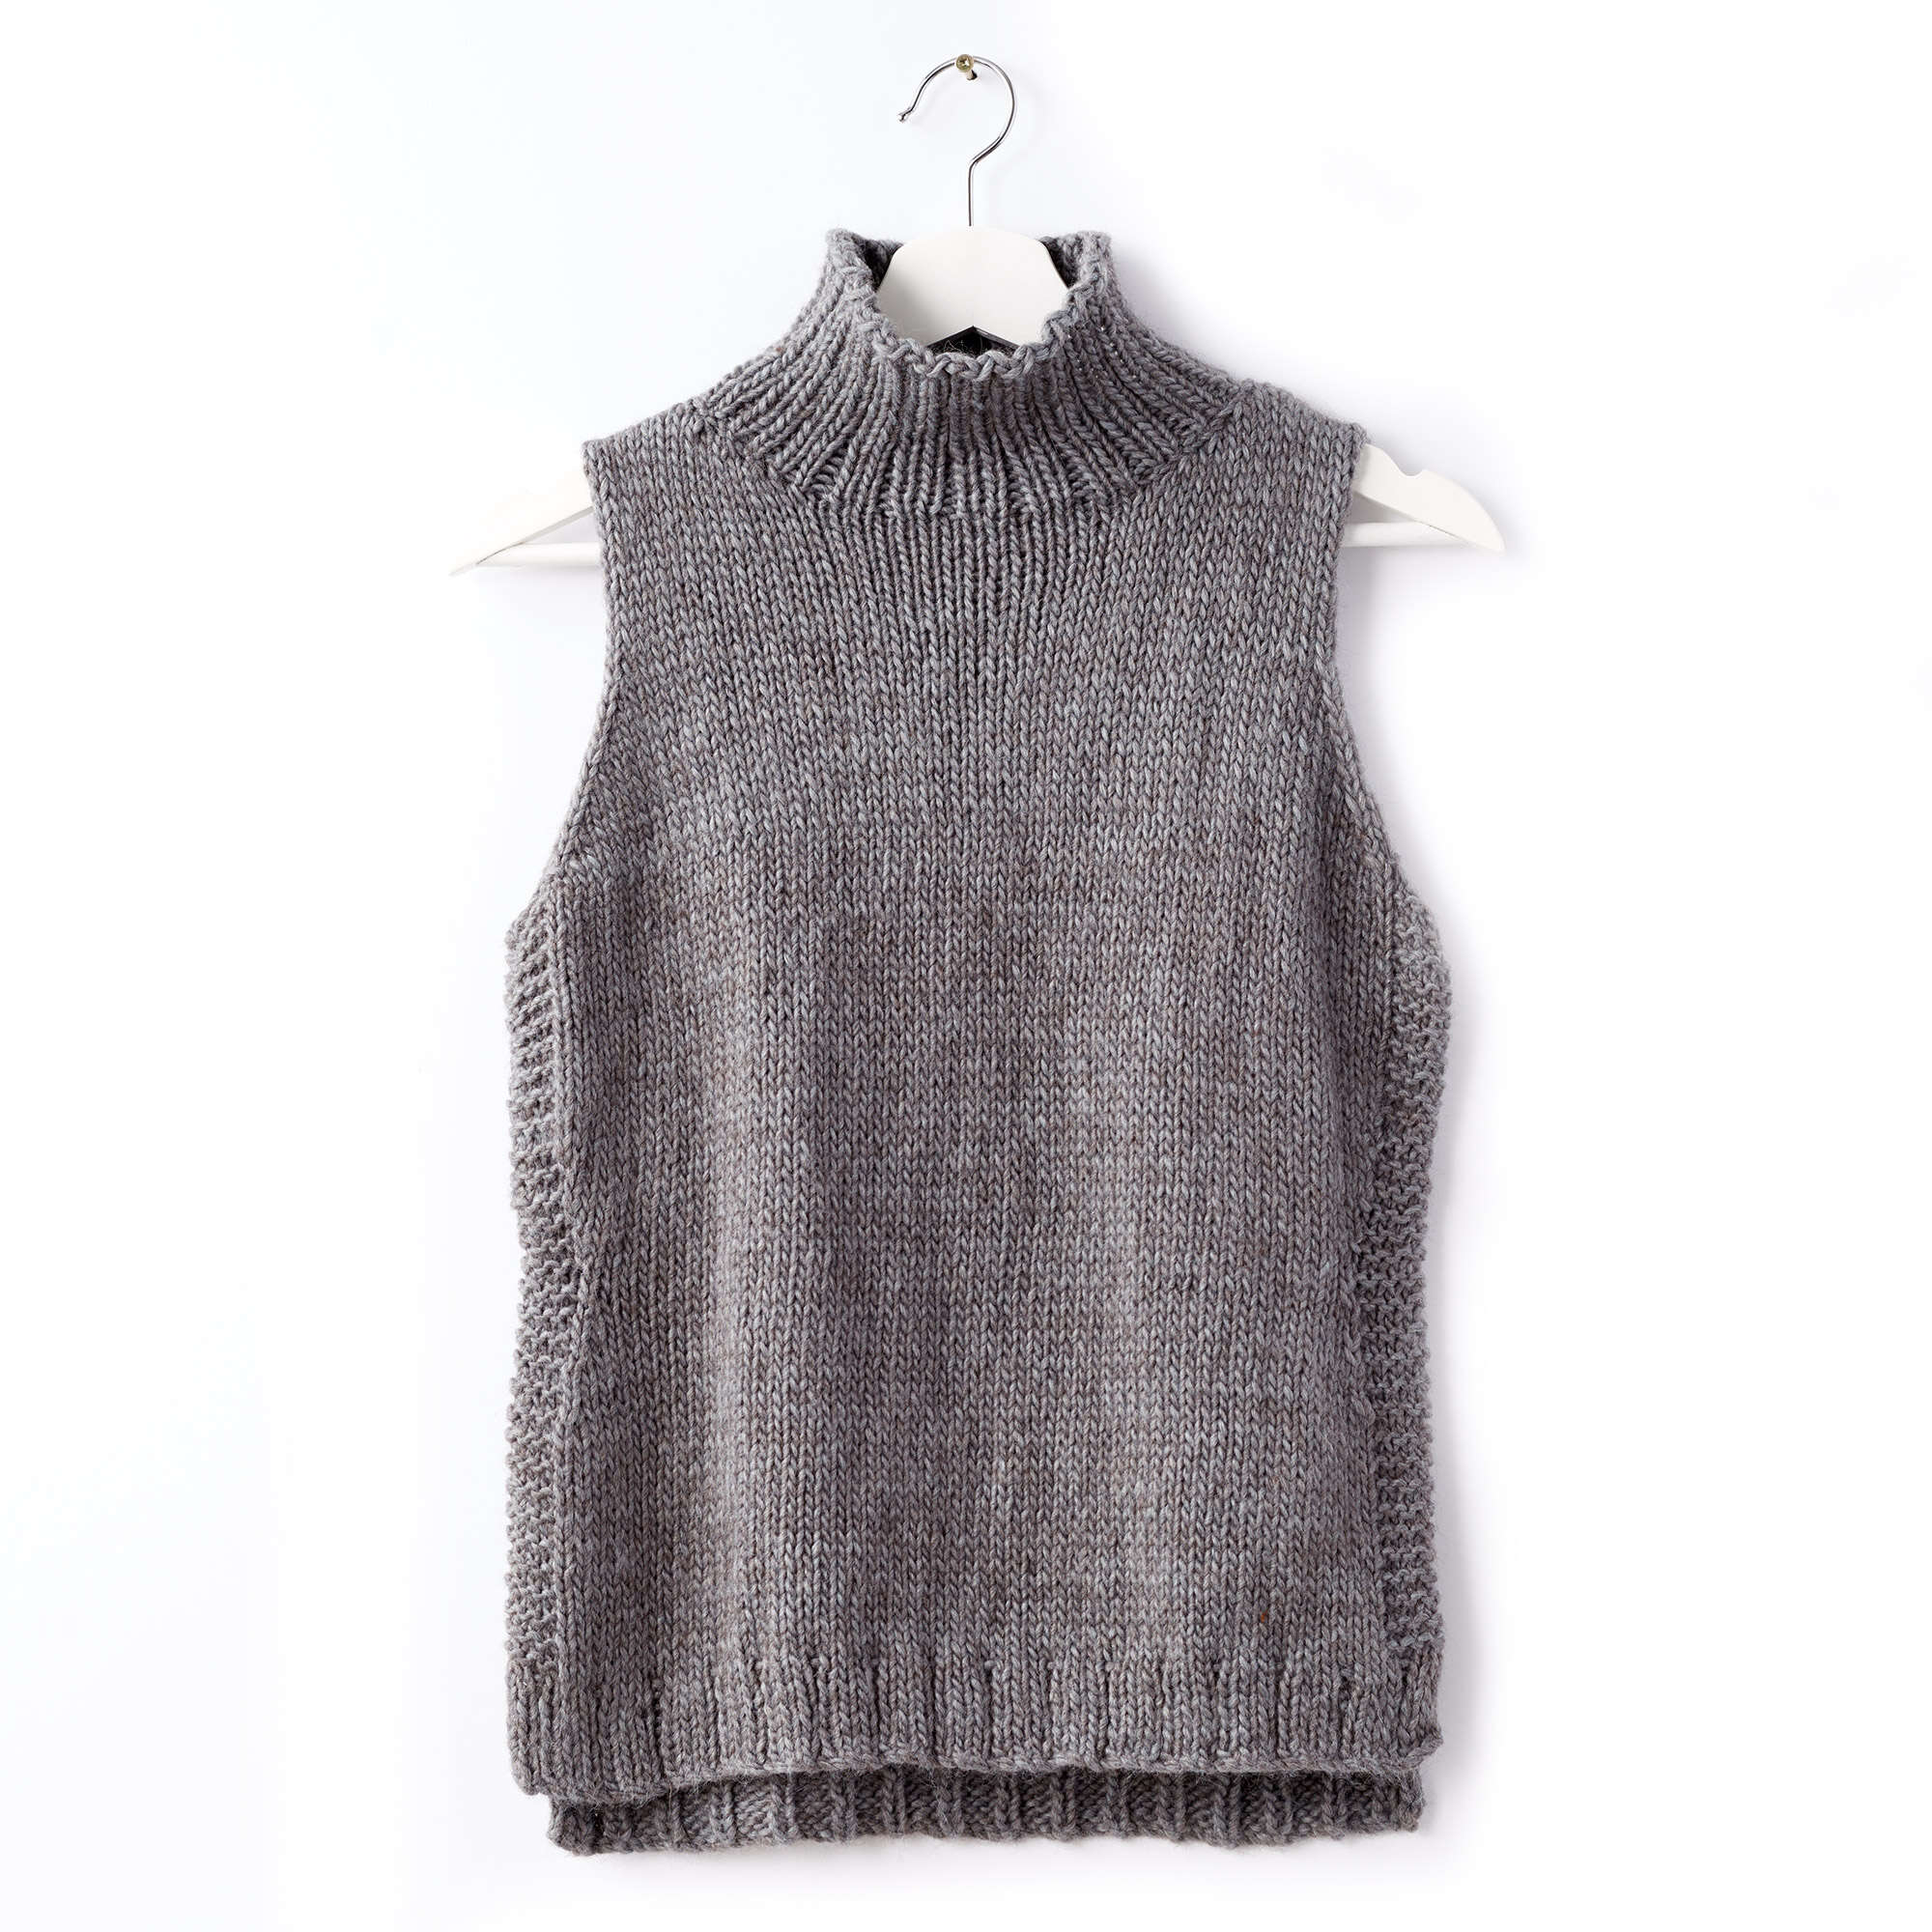 Free Pattern: Sleeveless Knit Turtleneck in Patons Alpaca Blend yarn